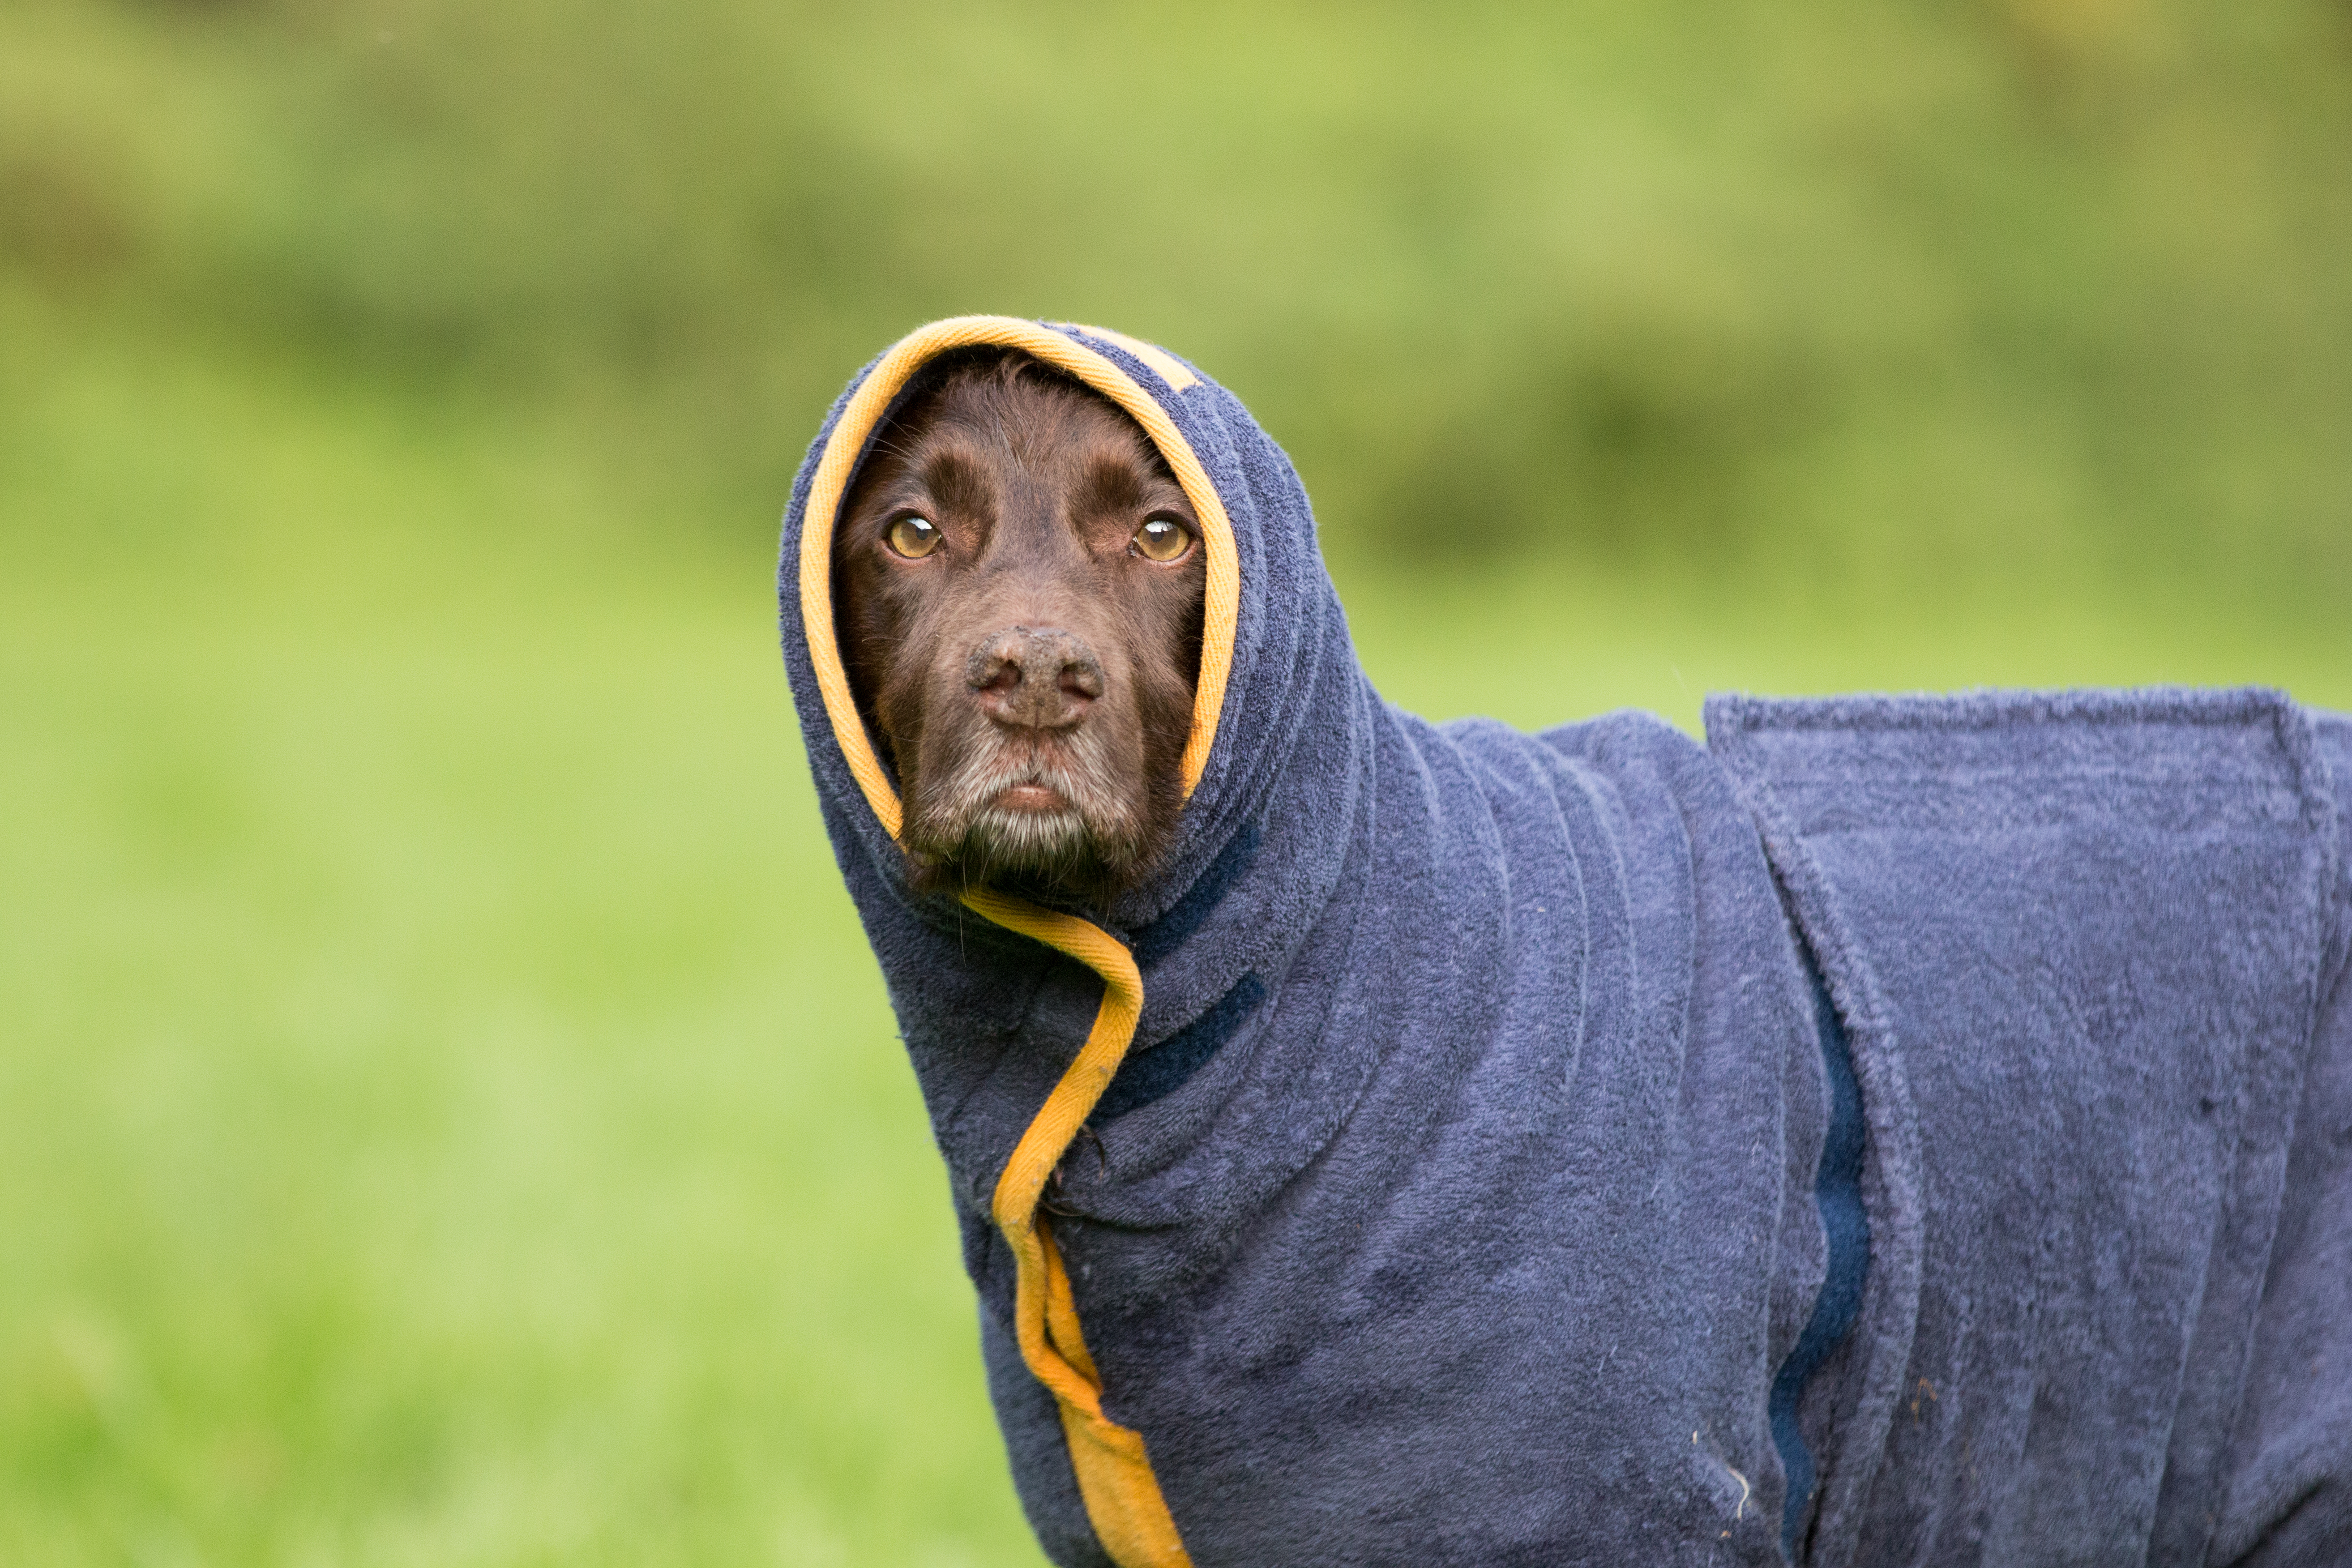 dog towel jacket